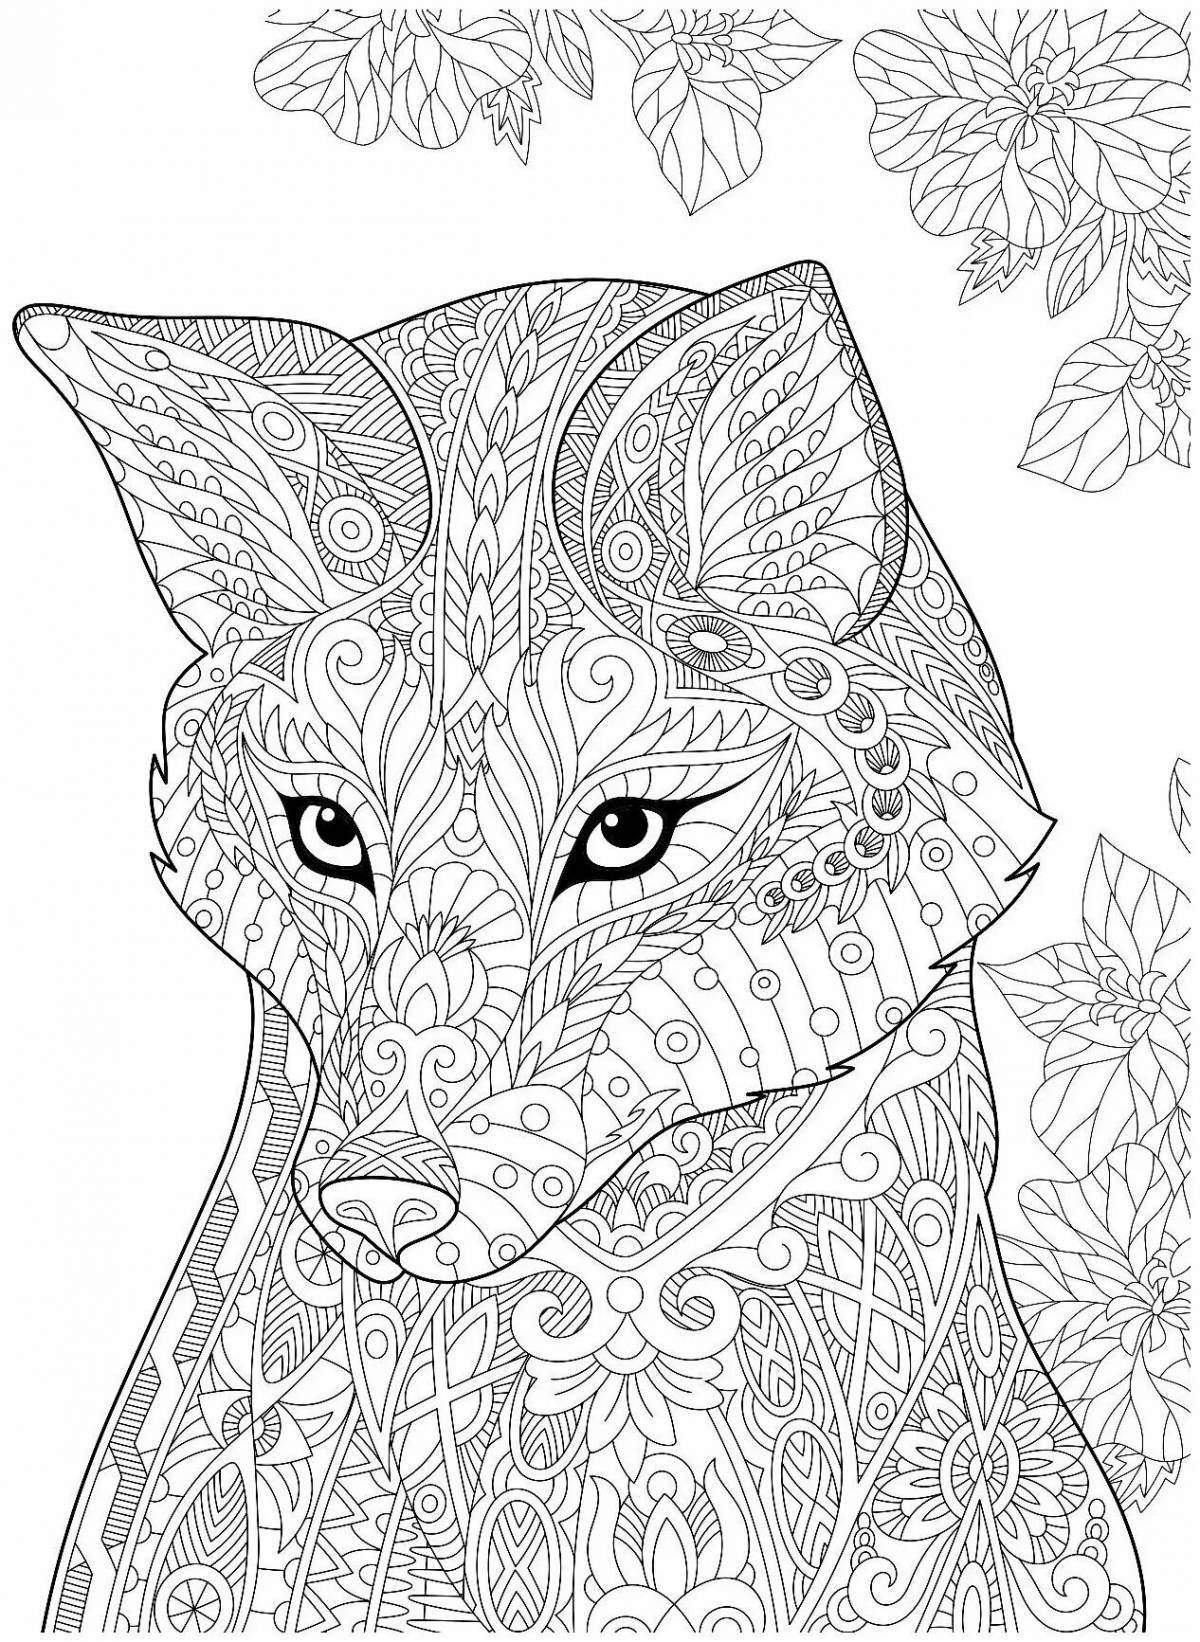 Adorable fox anti-stress coloring book